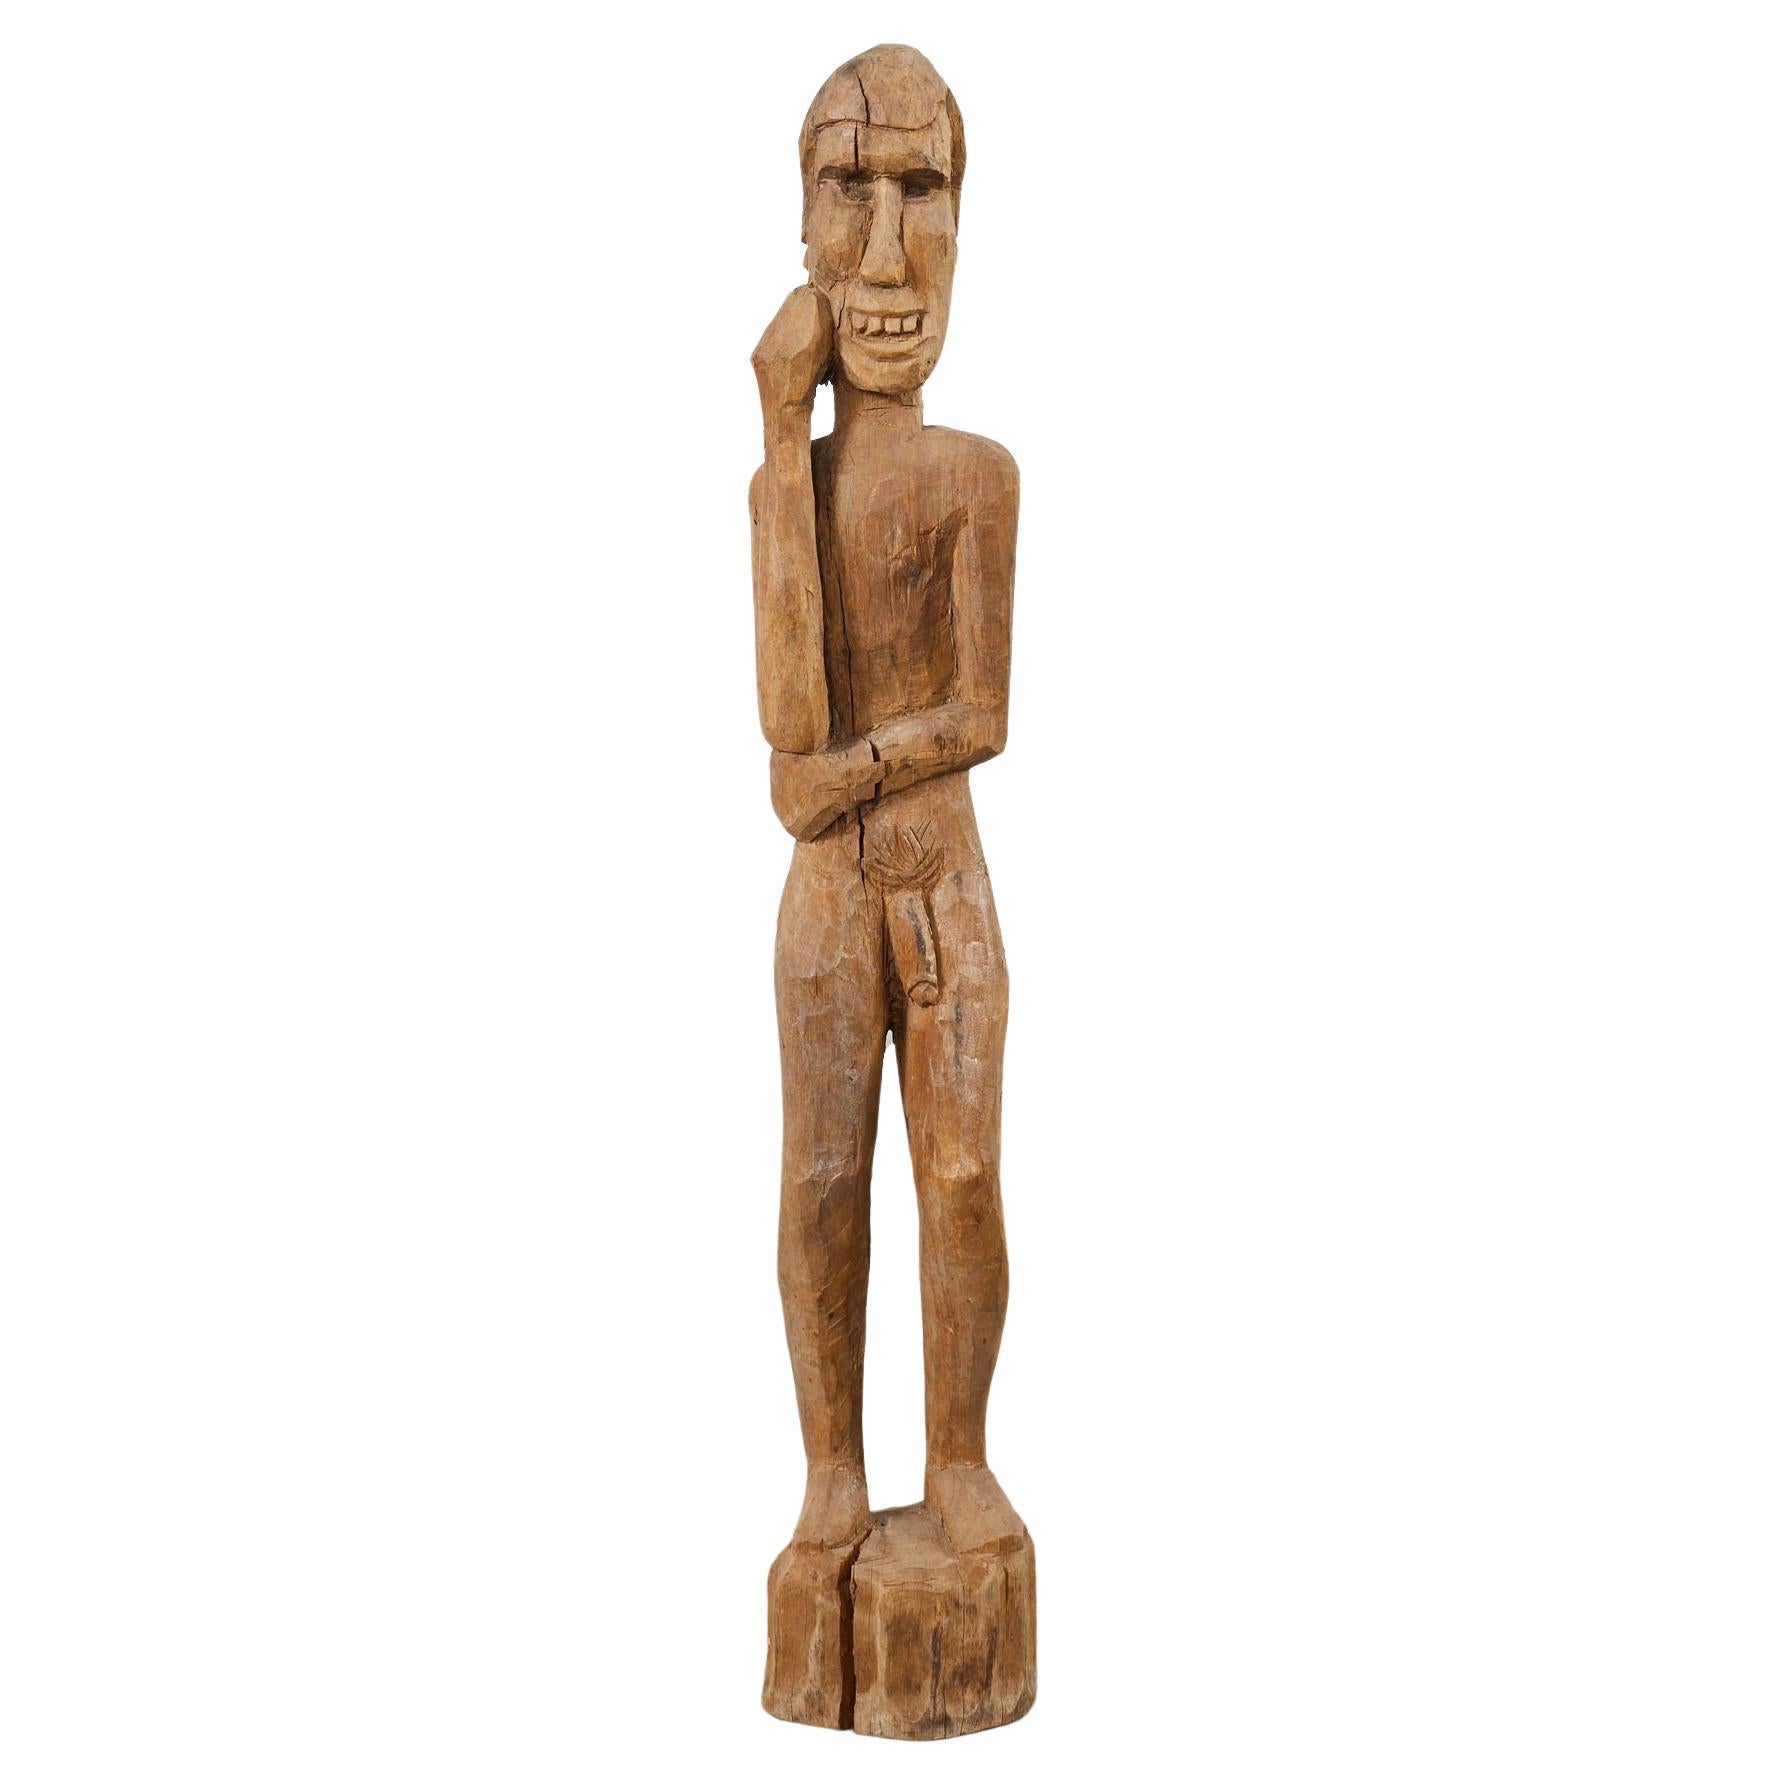 Sculpture de figure debout en bois sculpté de style tribal